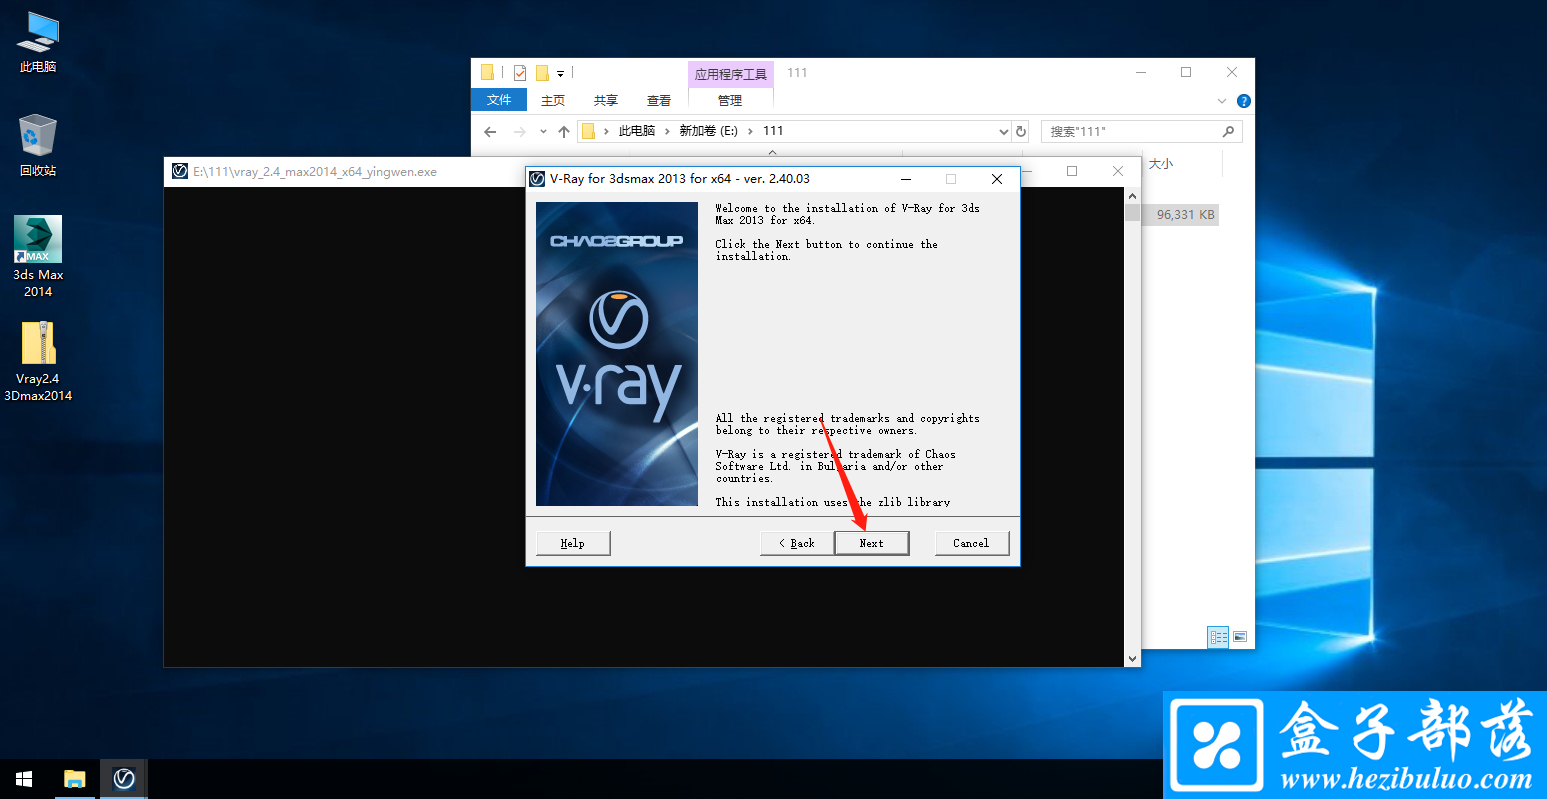 Vray for 3dsmax 2.4 高质量增强渲染软件免费版